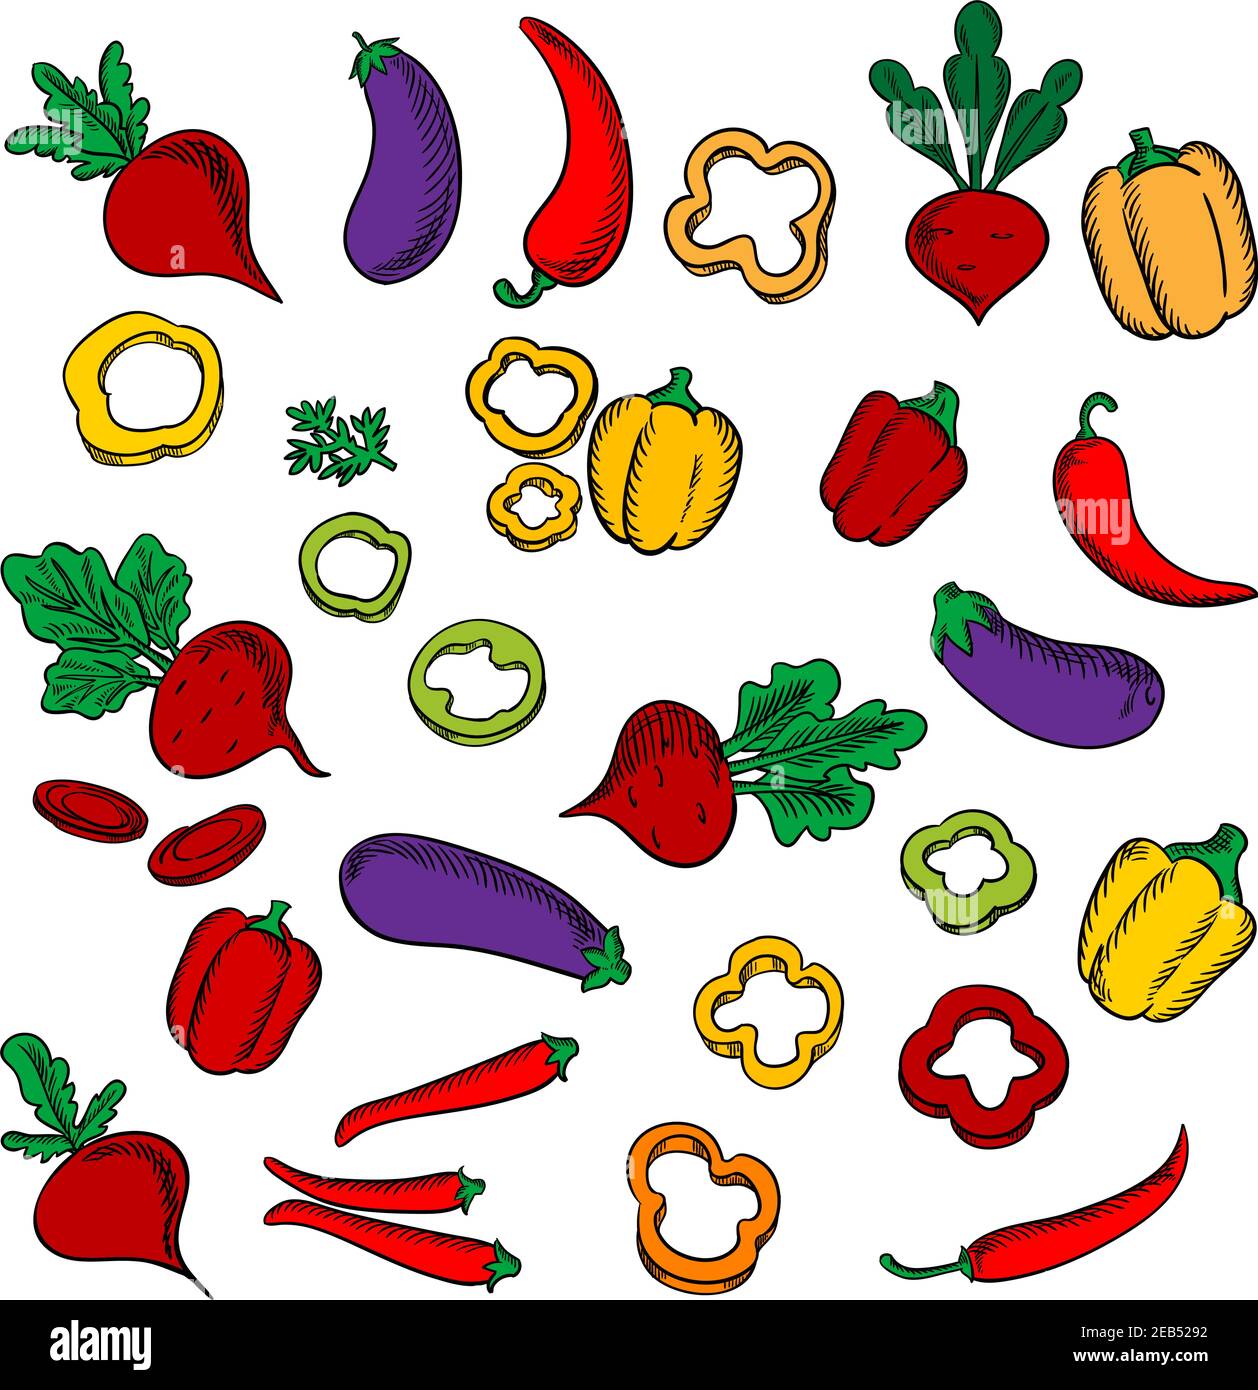 Rüben mit üppigen Pflaumen, Chilischoten, Auberginen, in Scheiben geschnitten und ganze rote, orange, gelbe Paprika Gemüse Stock Vektor